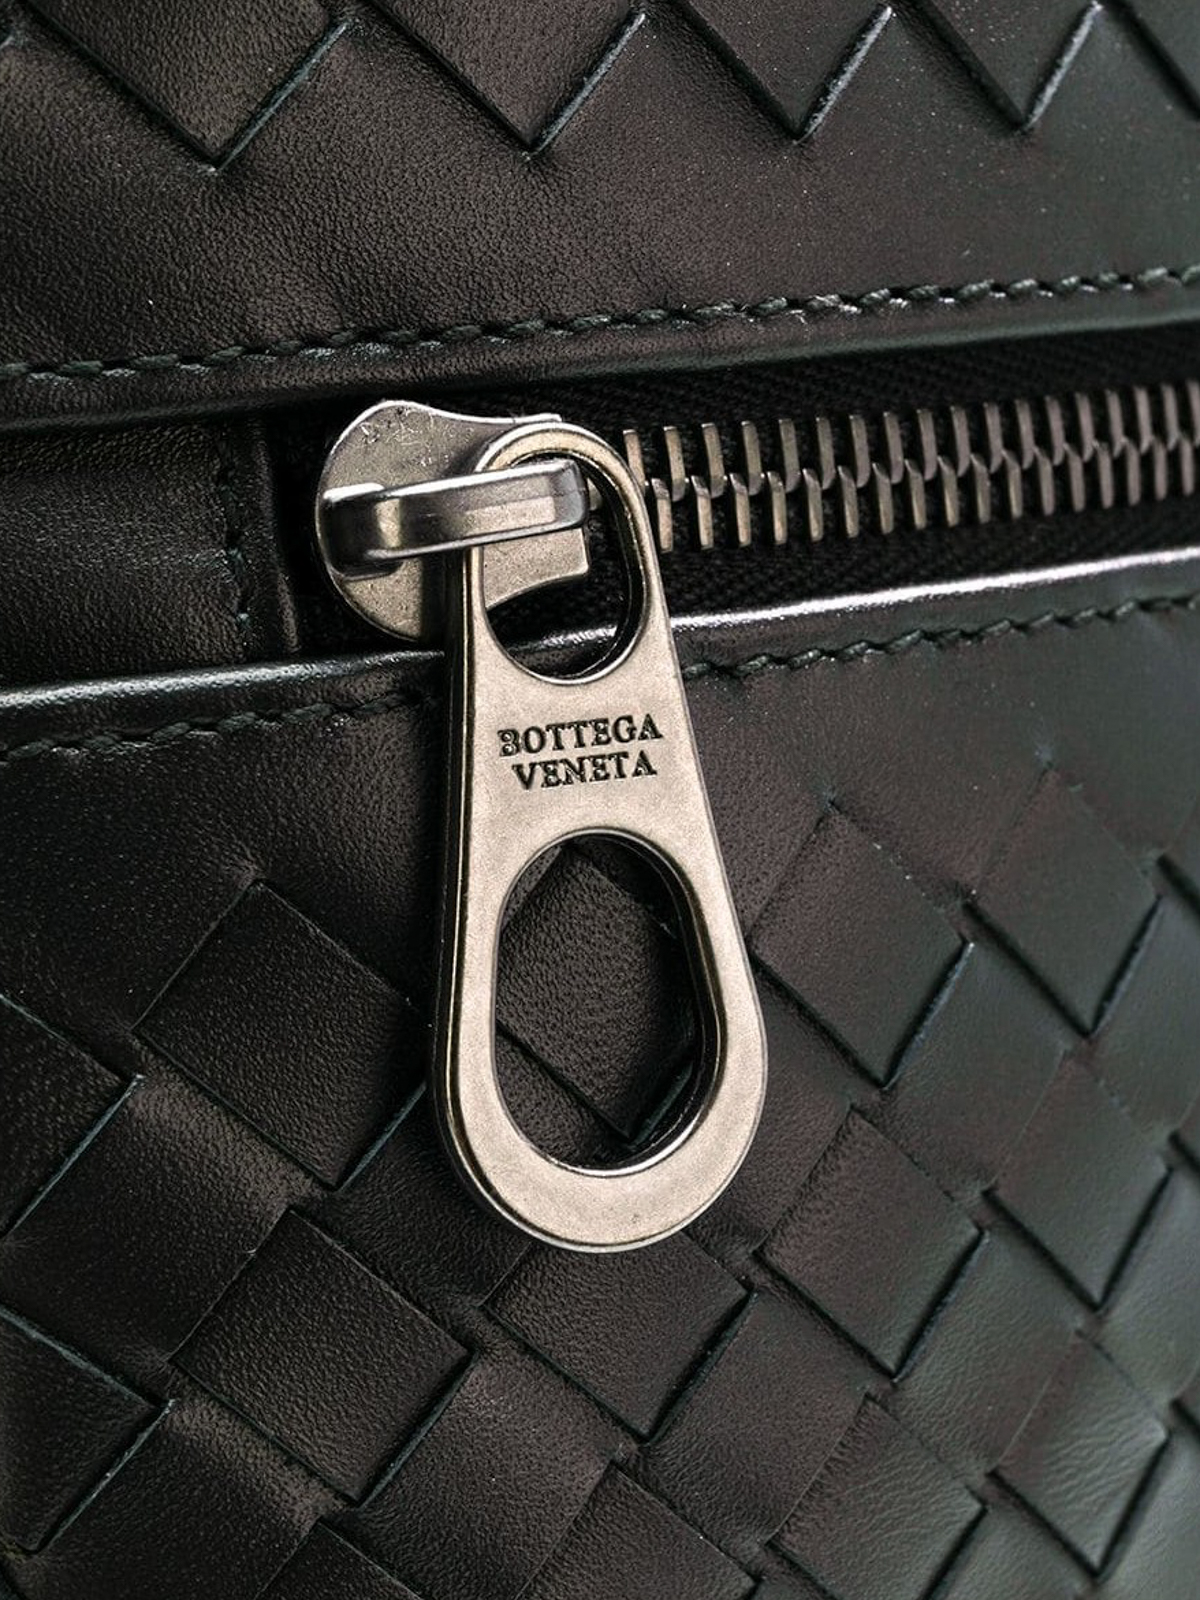 Bottega Veneta Men's Intrecciato Medium Leather Document Case - Black - Pouches